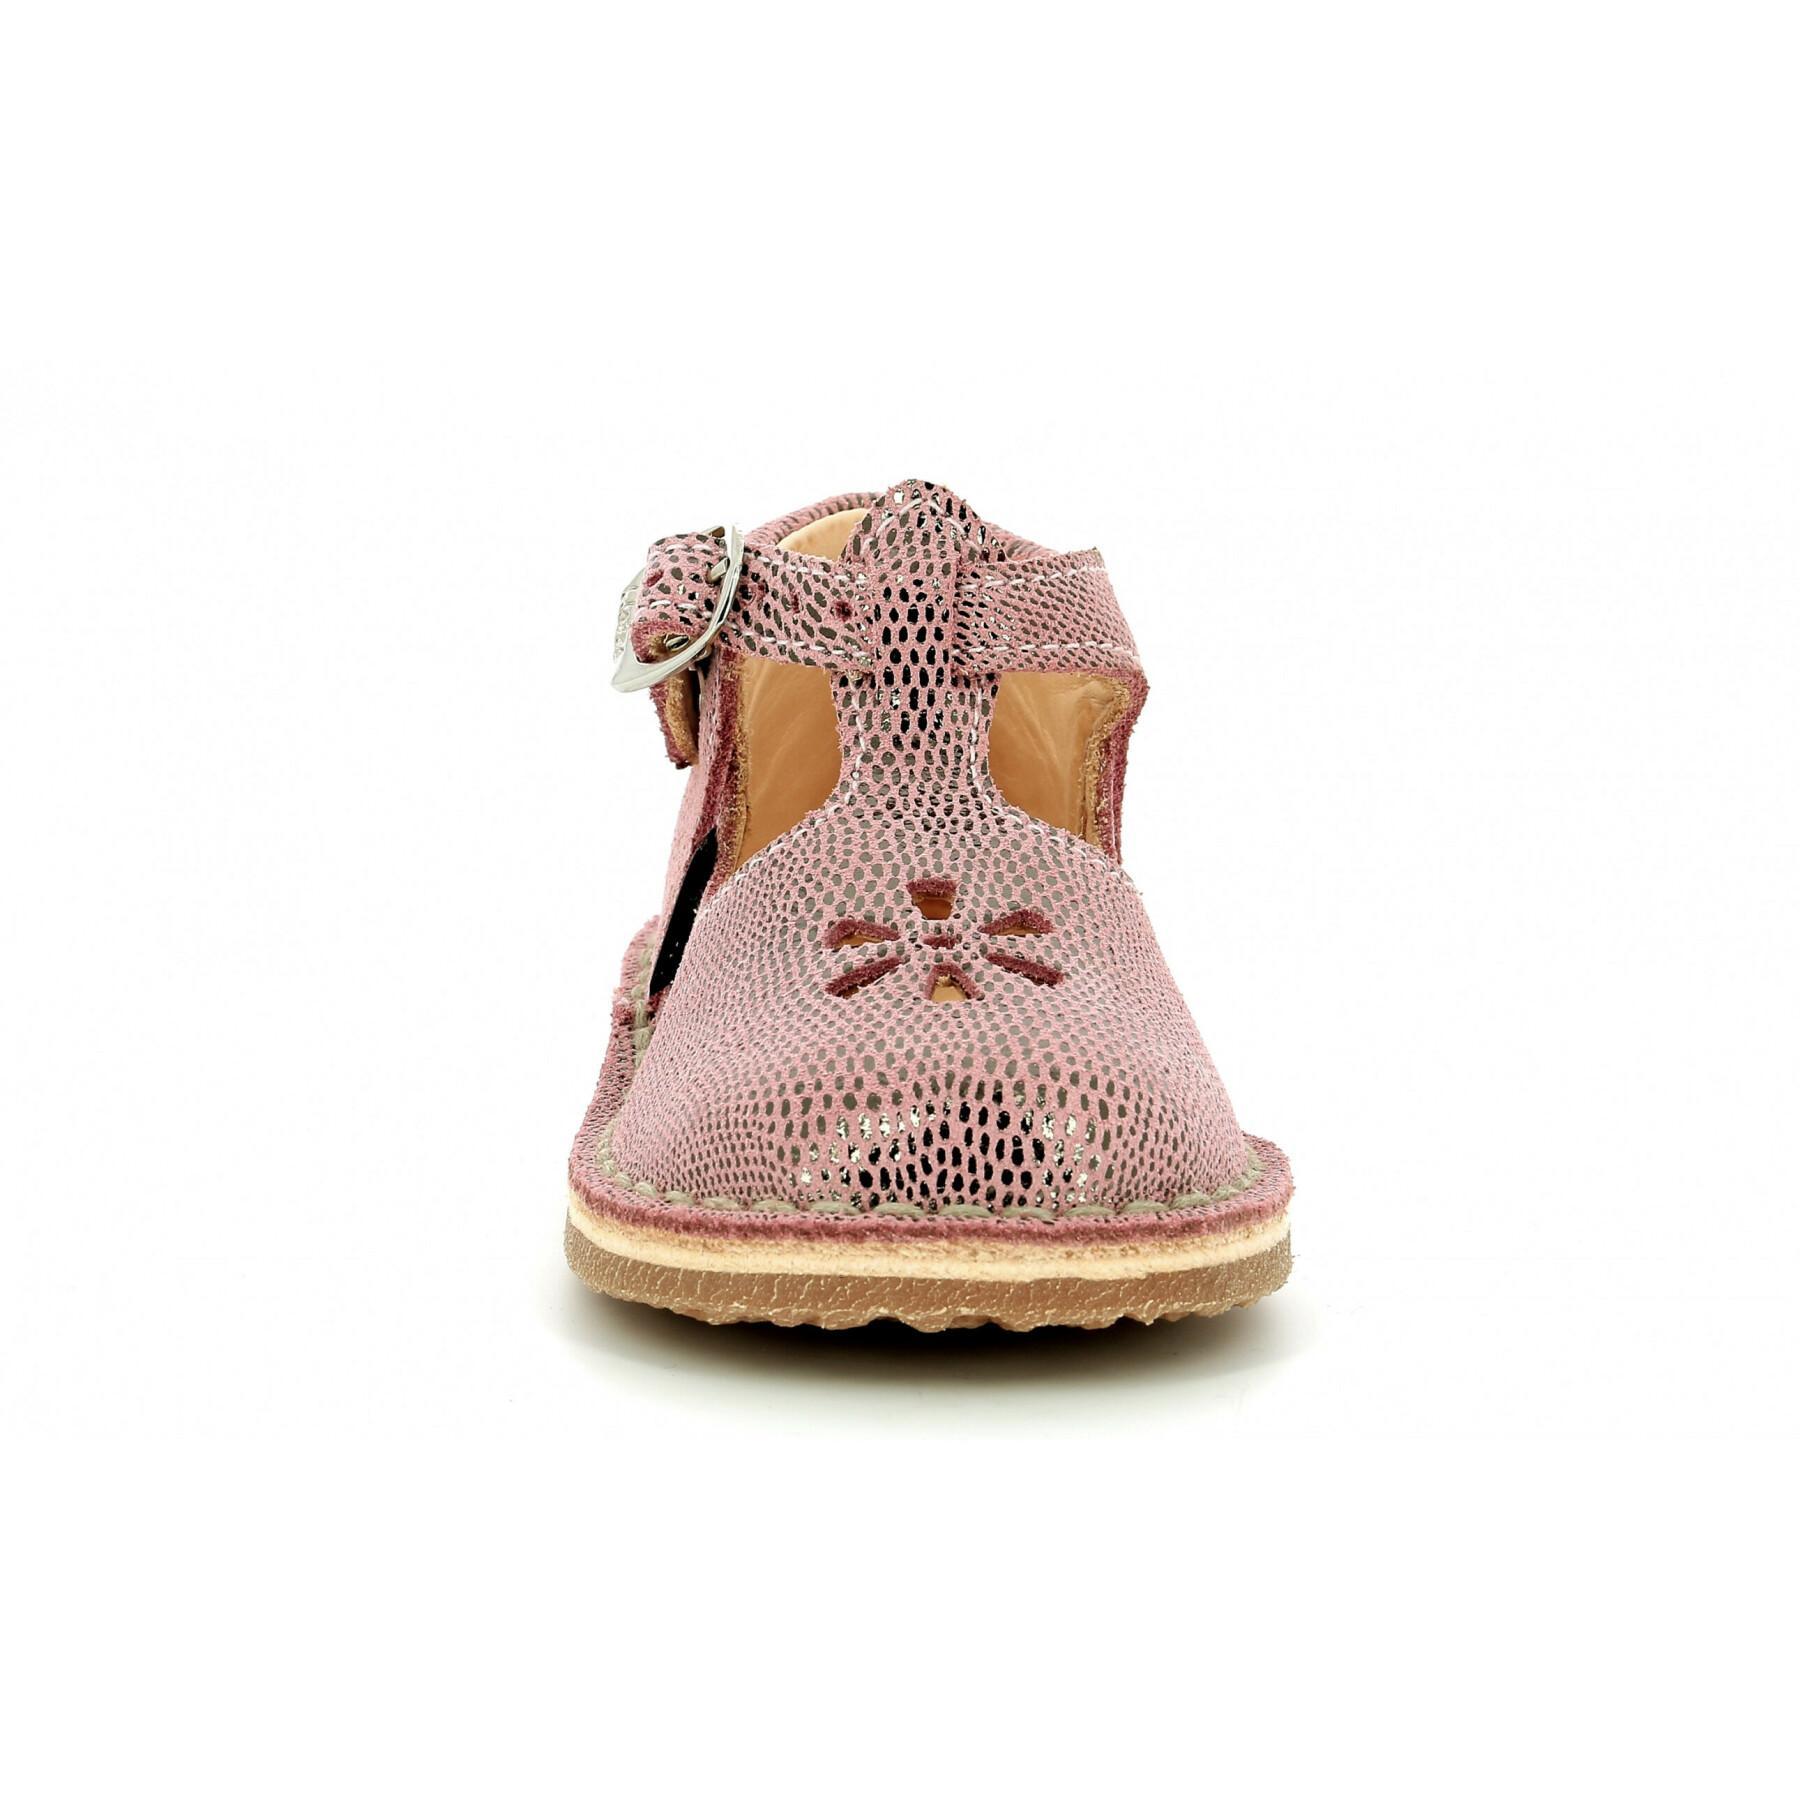 Sandálias para bebés Aster Bimbo-2